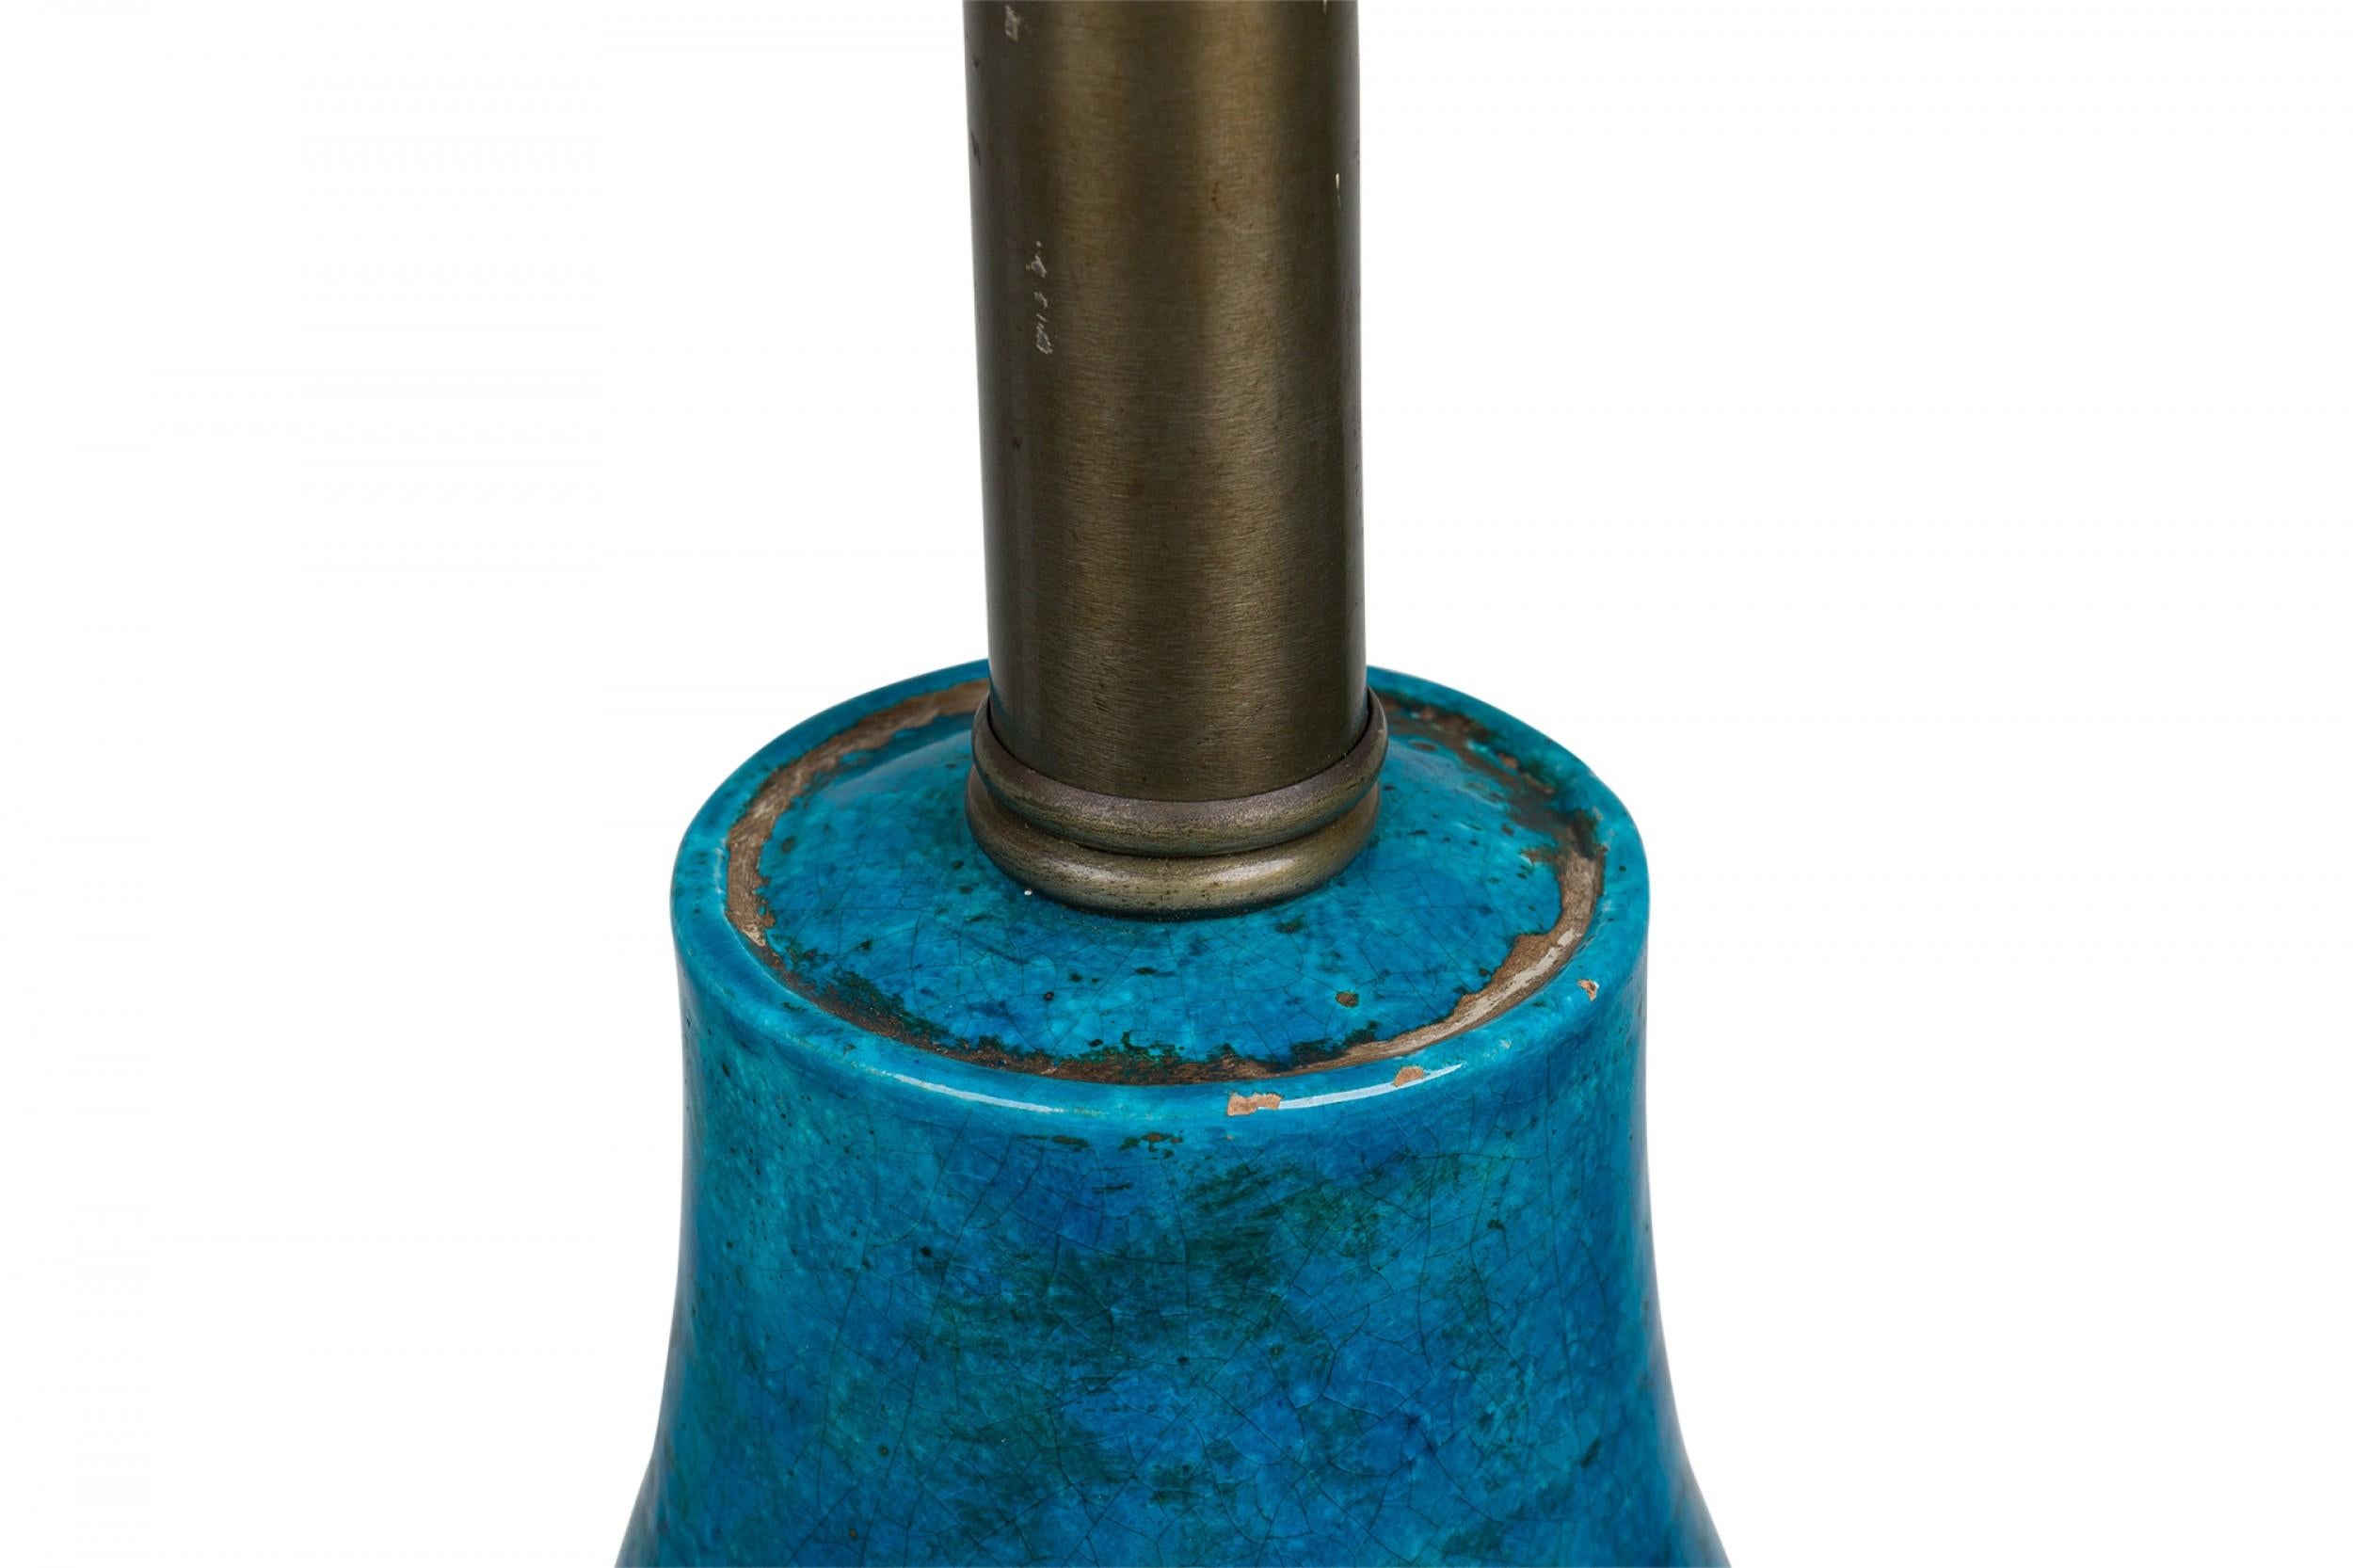 Lampe de table italienne du milieu du siècle en céramique de forme ovoïde avec un col effilé menant à une tige en métal étain brossé et à une prise d'interrupteur en forme de coupe, le corps incisé avec trois rangées décoratives de bandes et cuit